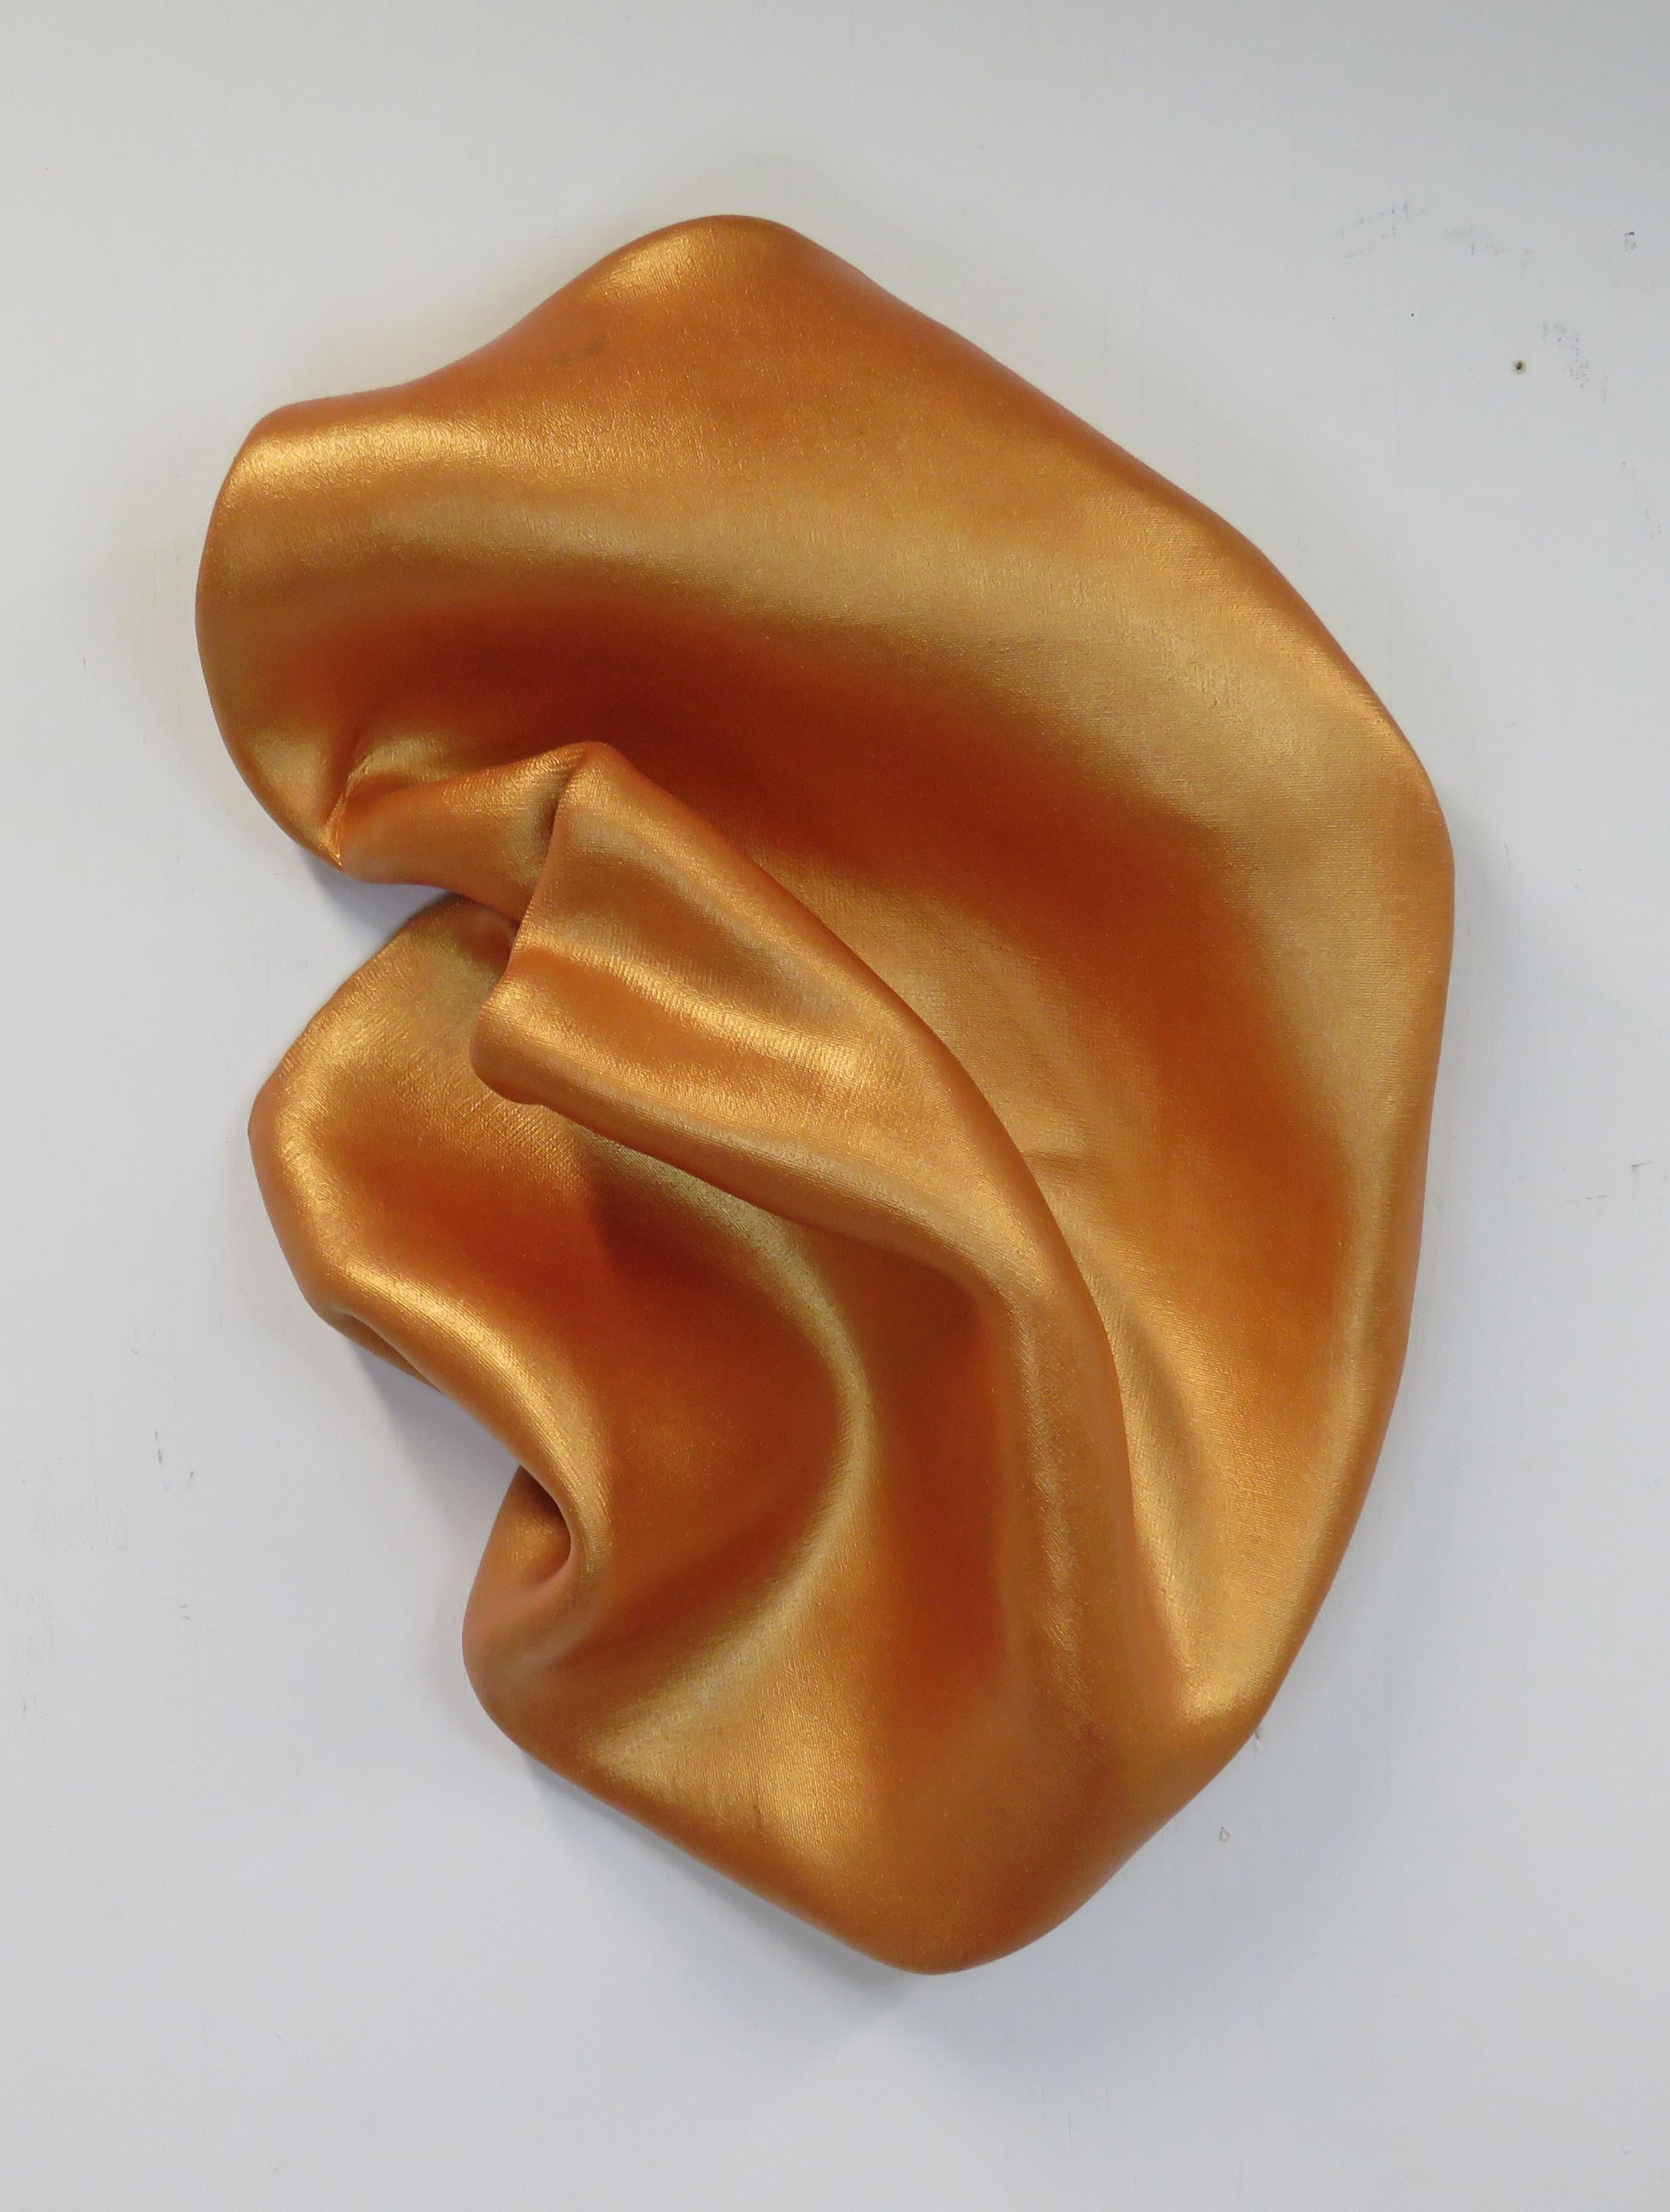  Sinuosité en orange poisson doré (sculpture murale d'art mural monochrome courbée minimaliste) - Mixed Media Art de Ted VanCleave